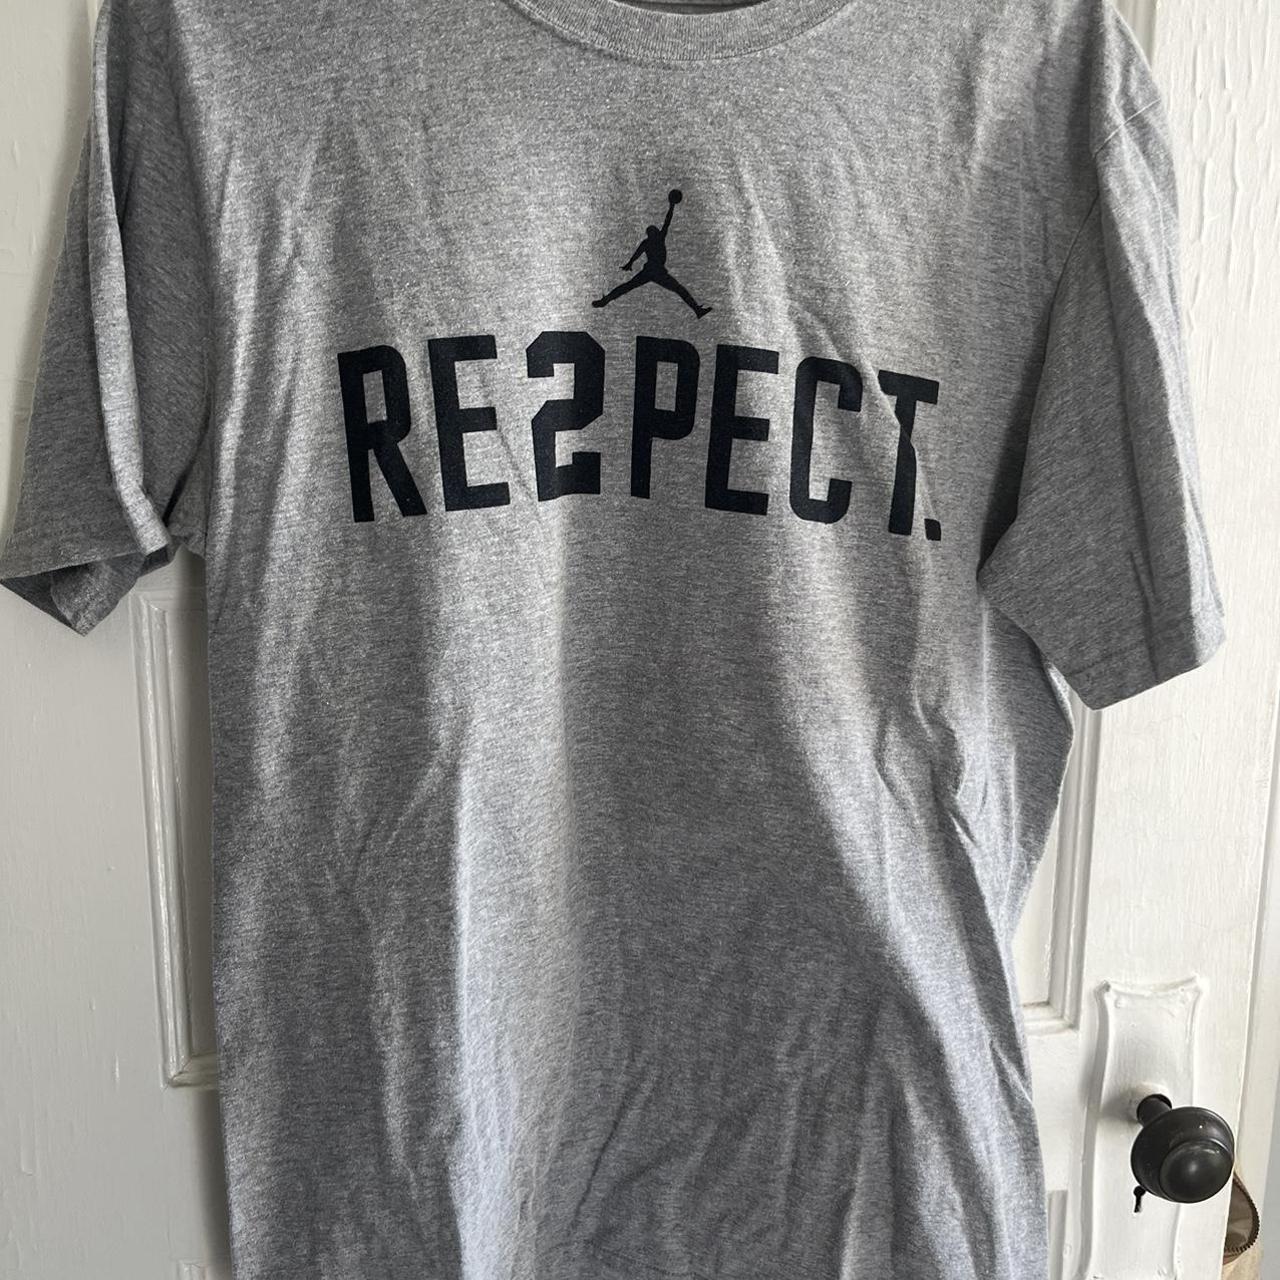 Nike Jordan RE2PECT Derek Jeter Collection